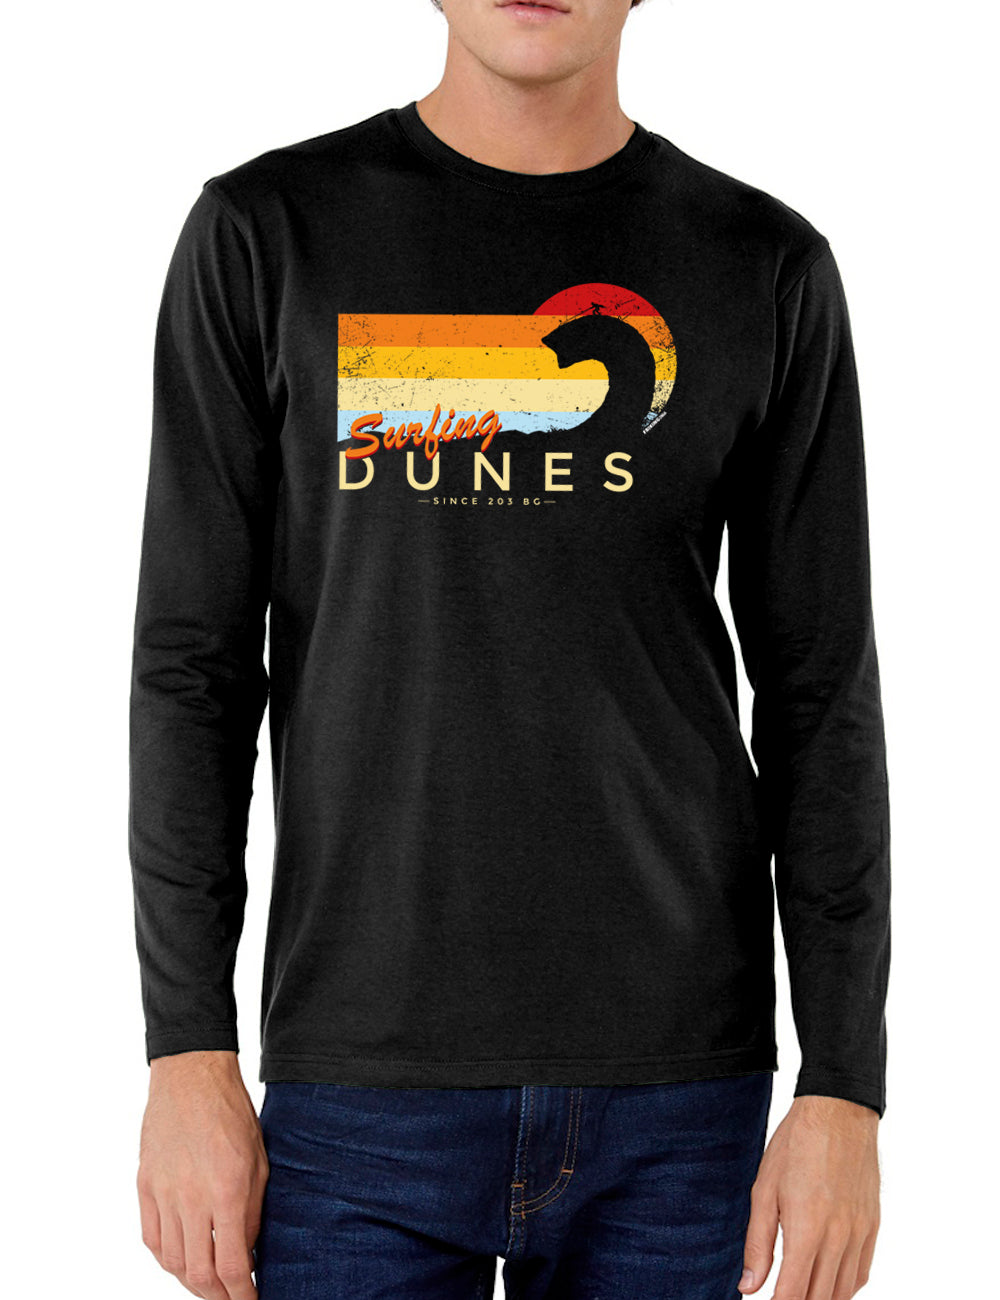 Surfing dunes